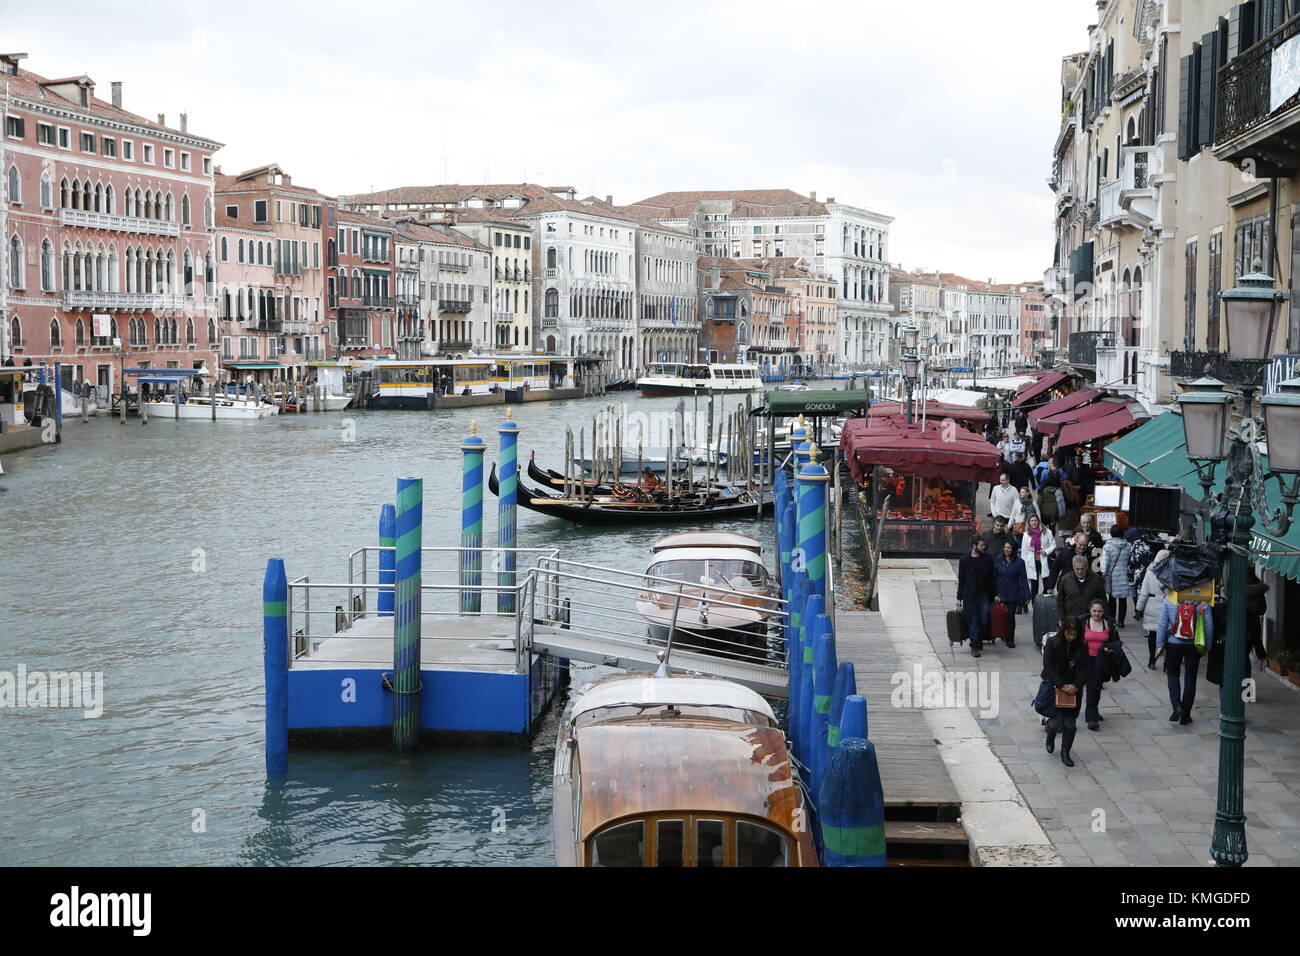 VENICE, ITALY: Gondolas and restaurants line the Grand Canal near the Ponte di Rialto bridge in Venice, Italy. Stock Photo